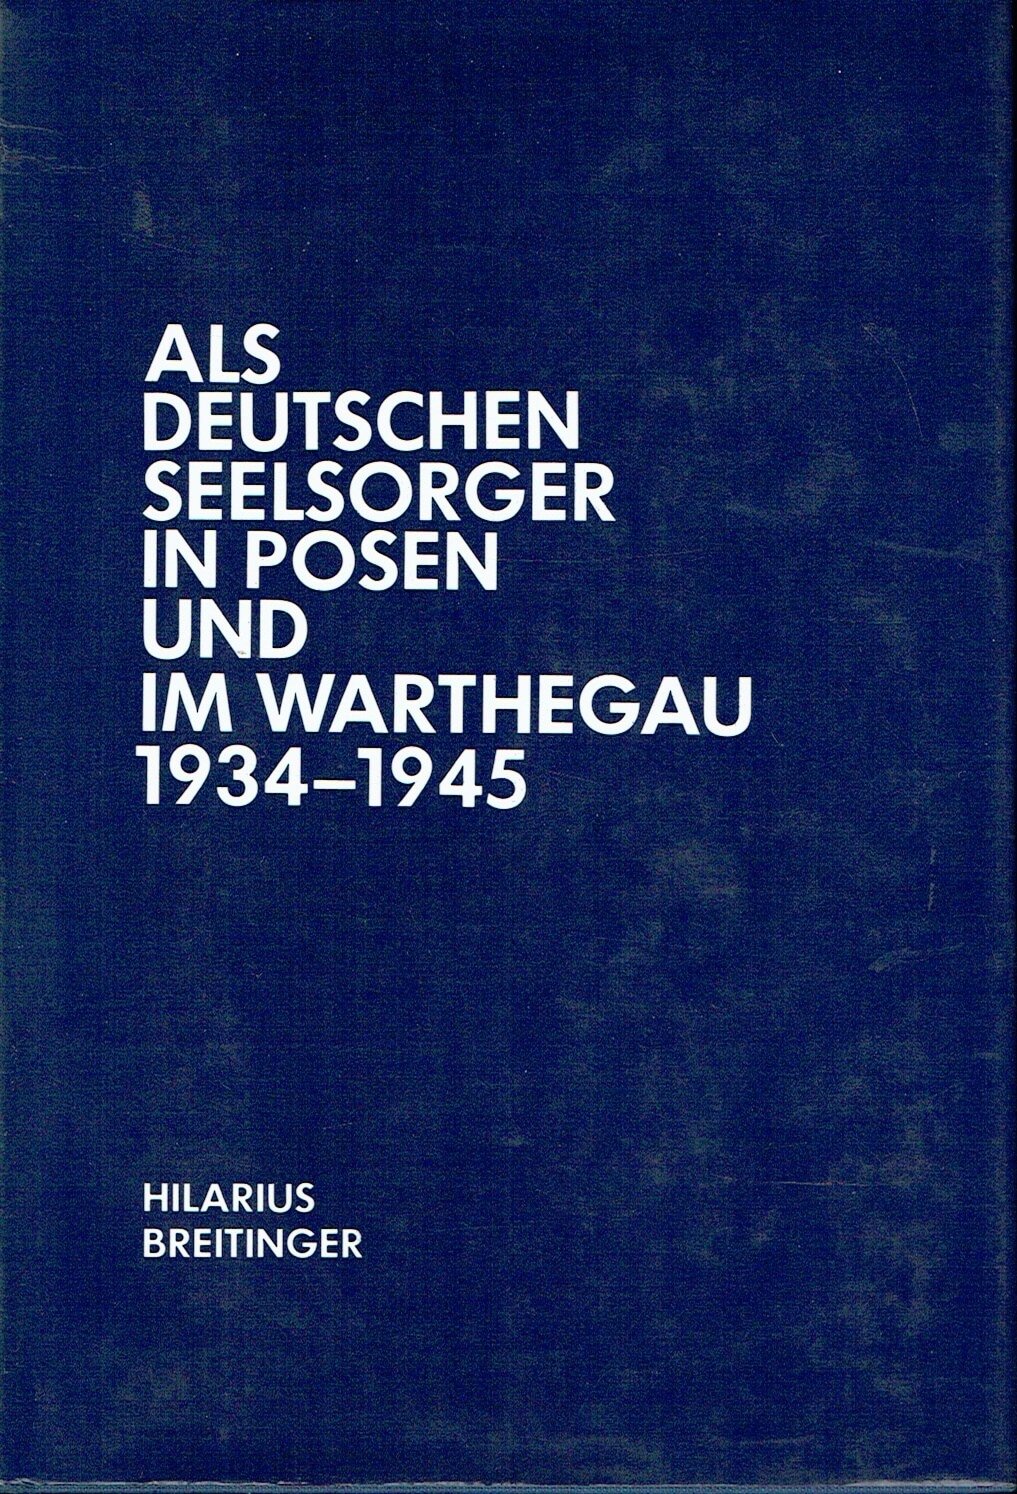 Als Deutschenseelsorger in Posen und im Warthegau 1934-1945 Erinnerungen - Hilarius Breitinger / Editor: Konrad Repgen /